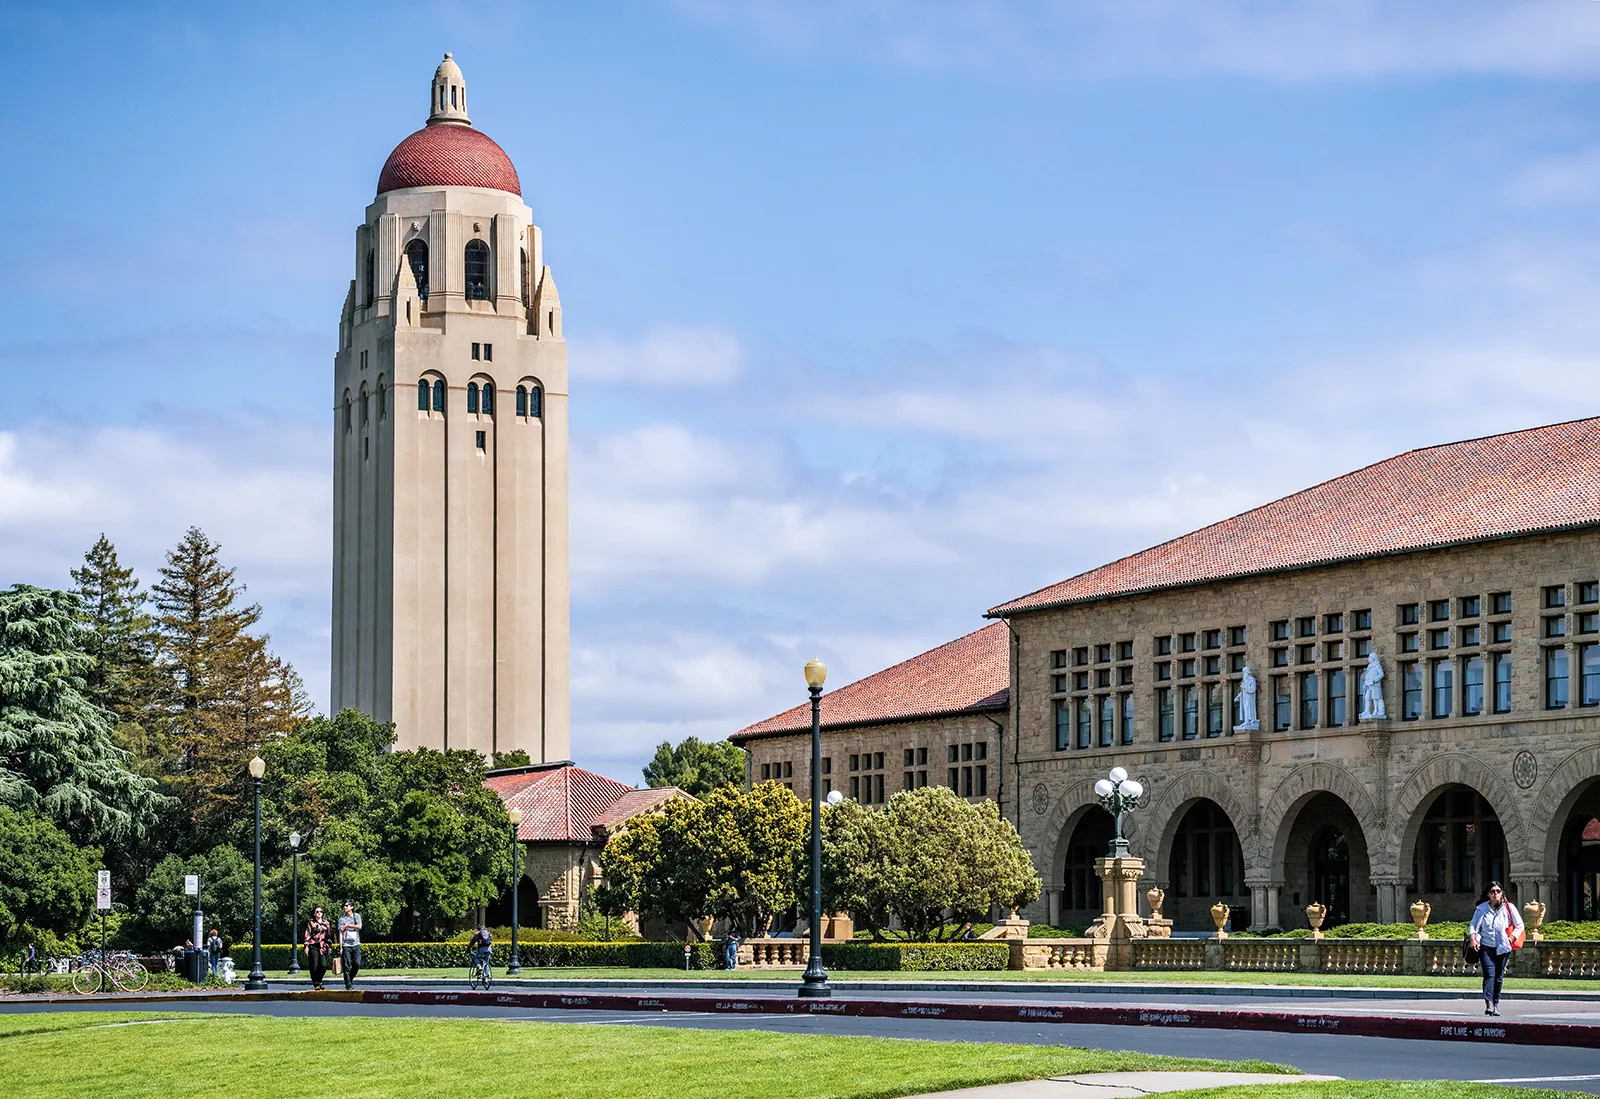 Hoover-Tower-Stanford-University-California.jpg